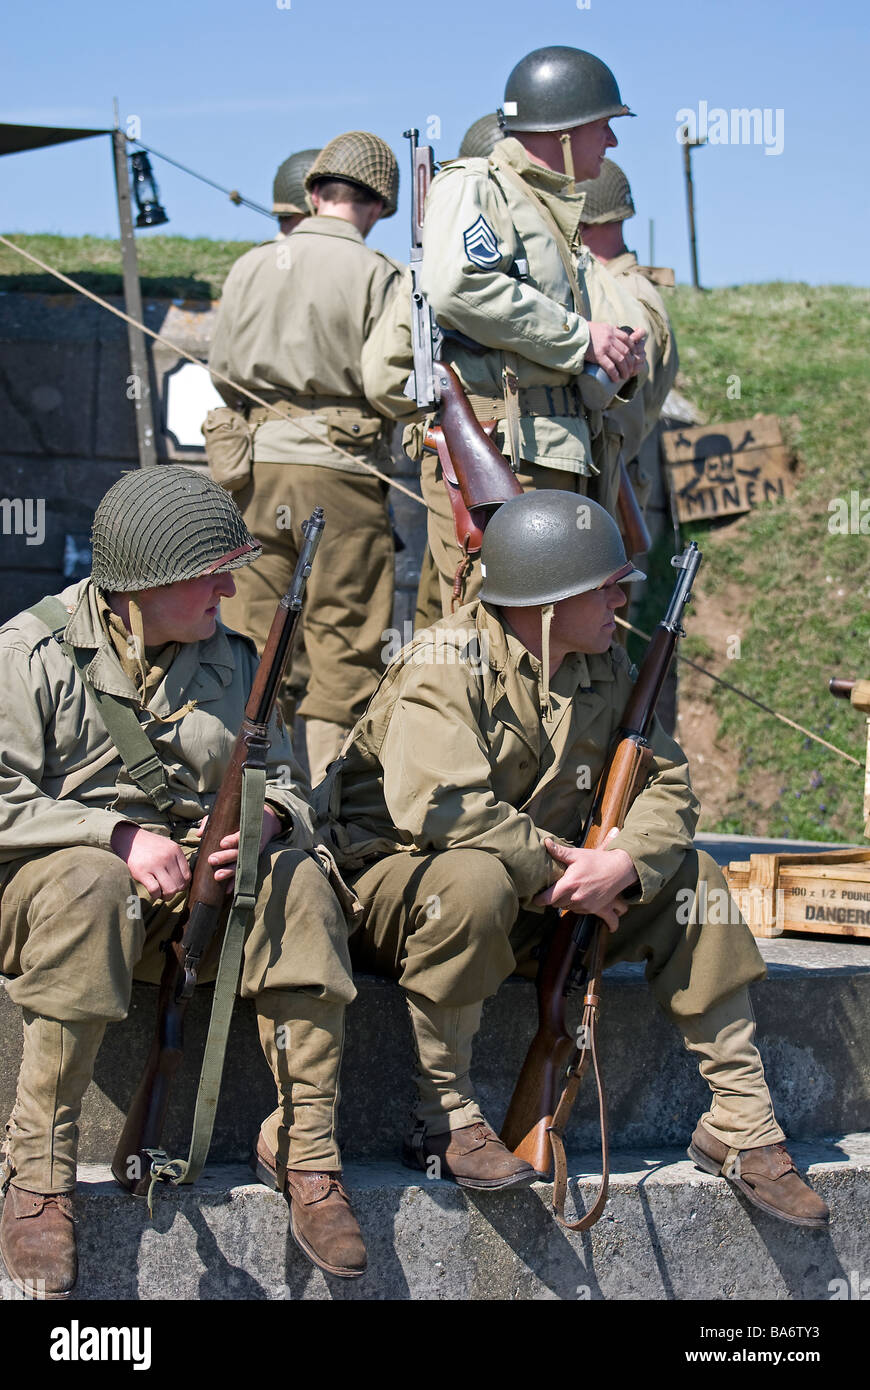 Grupo de WW2 soldados americanos con rifles. Foto de stock